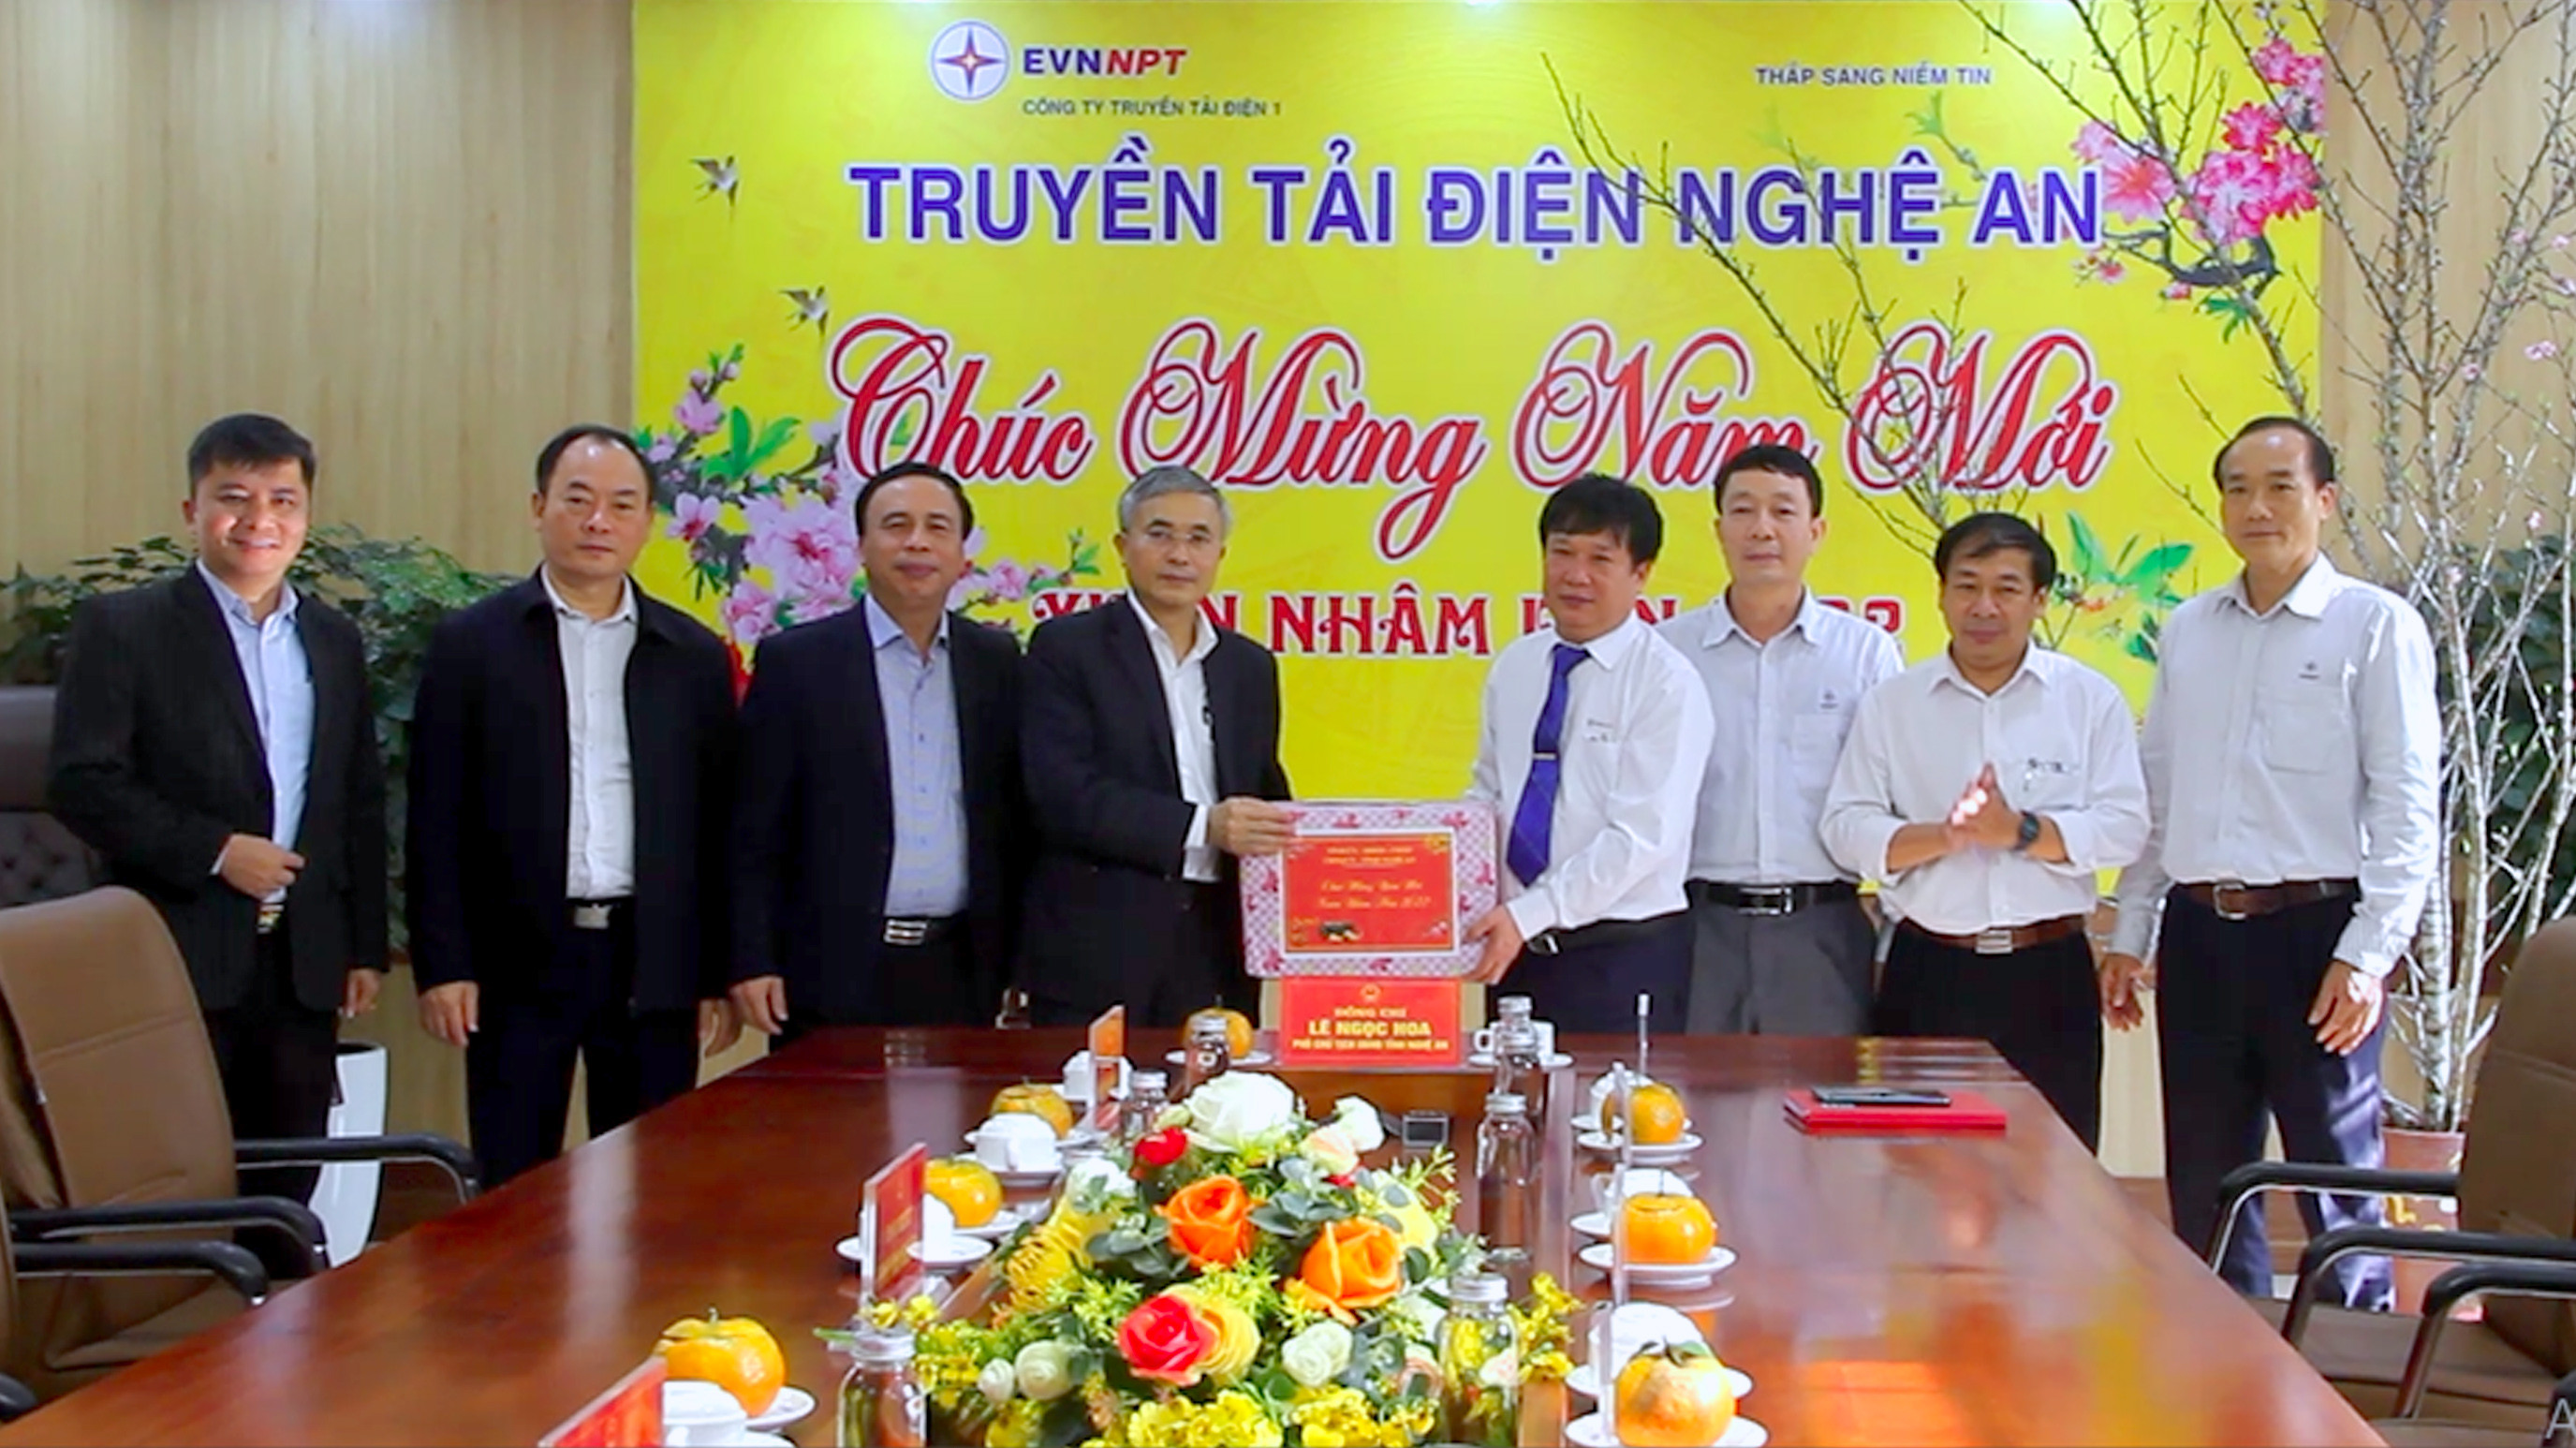 Phó Chủ tịch UBND tỉnh Lê Ngọc Hoa tặng quà chúc Tết Truyền tải điện Nghệ An. Ảnh: Quang An